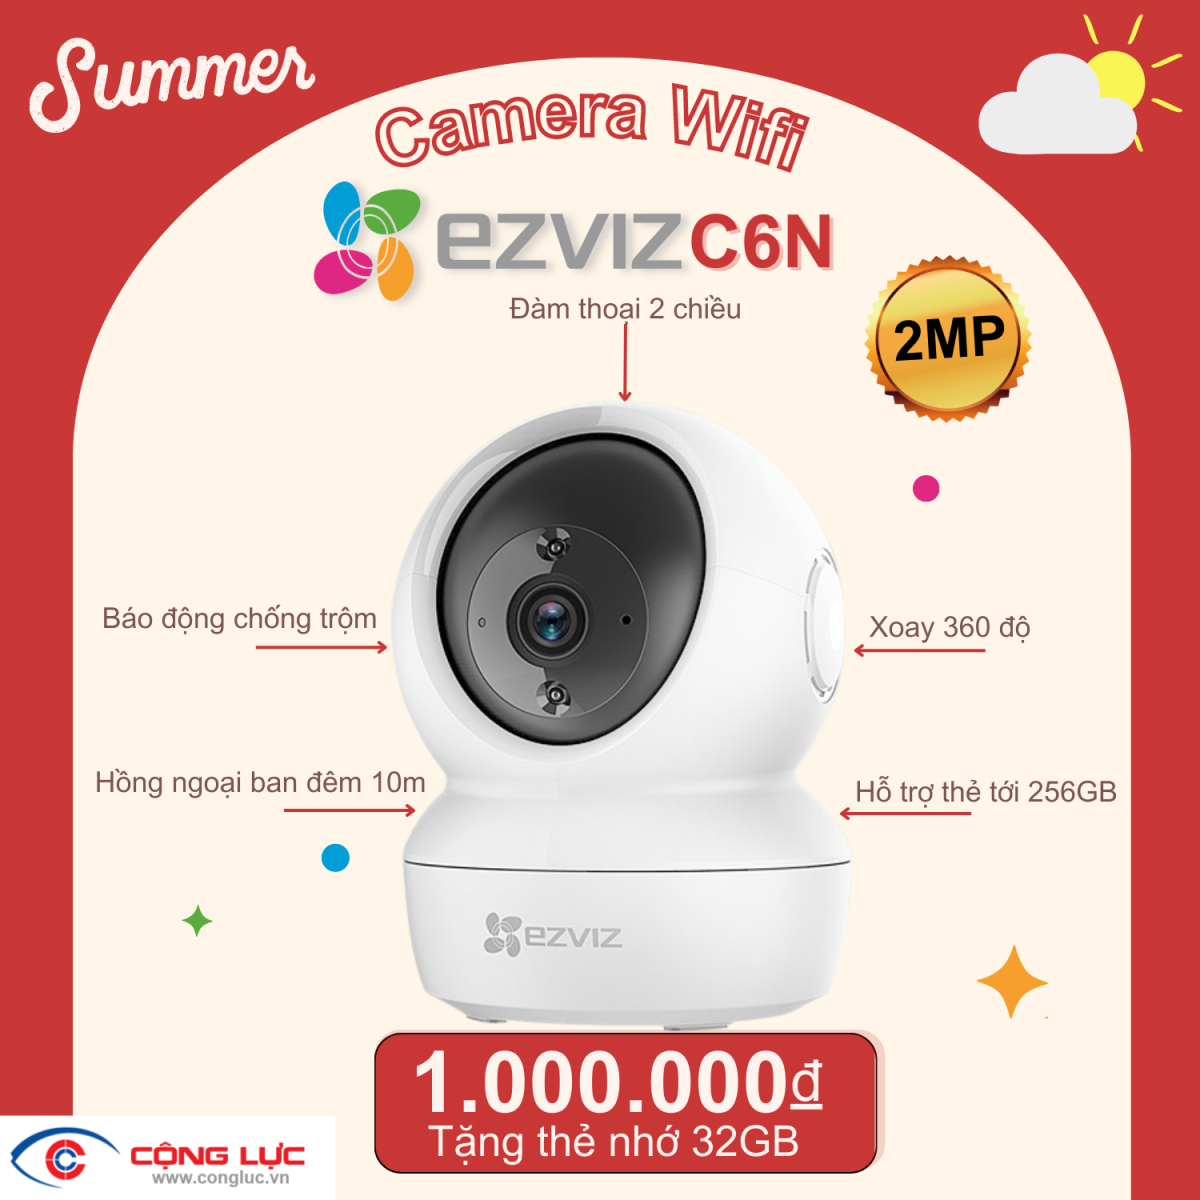 camera cộng lực bán camera wifi ezviz c6n 2mp giá rẻ tại hải phòng